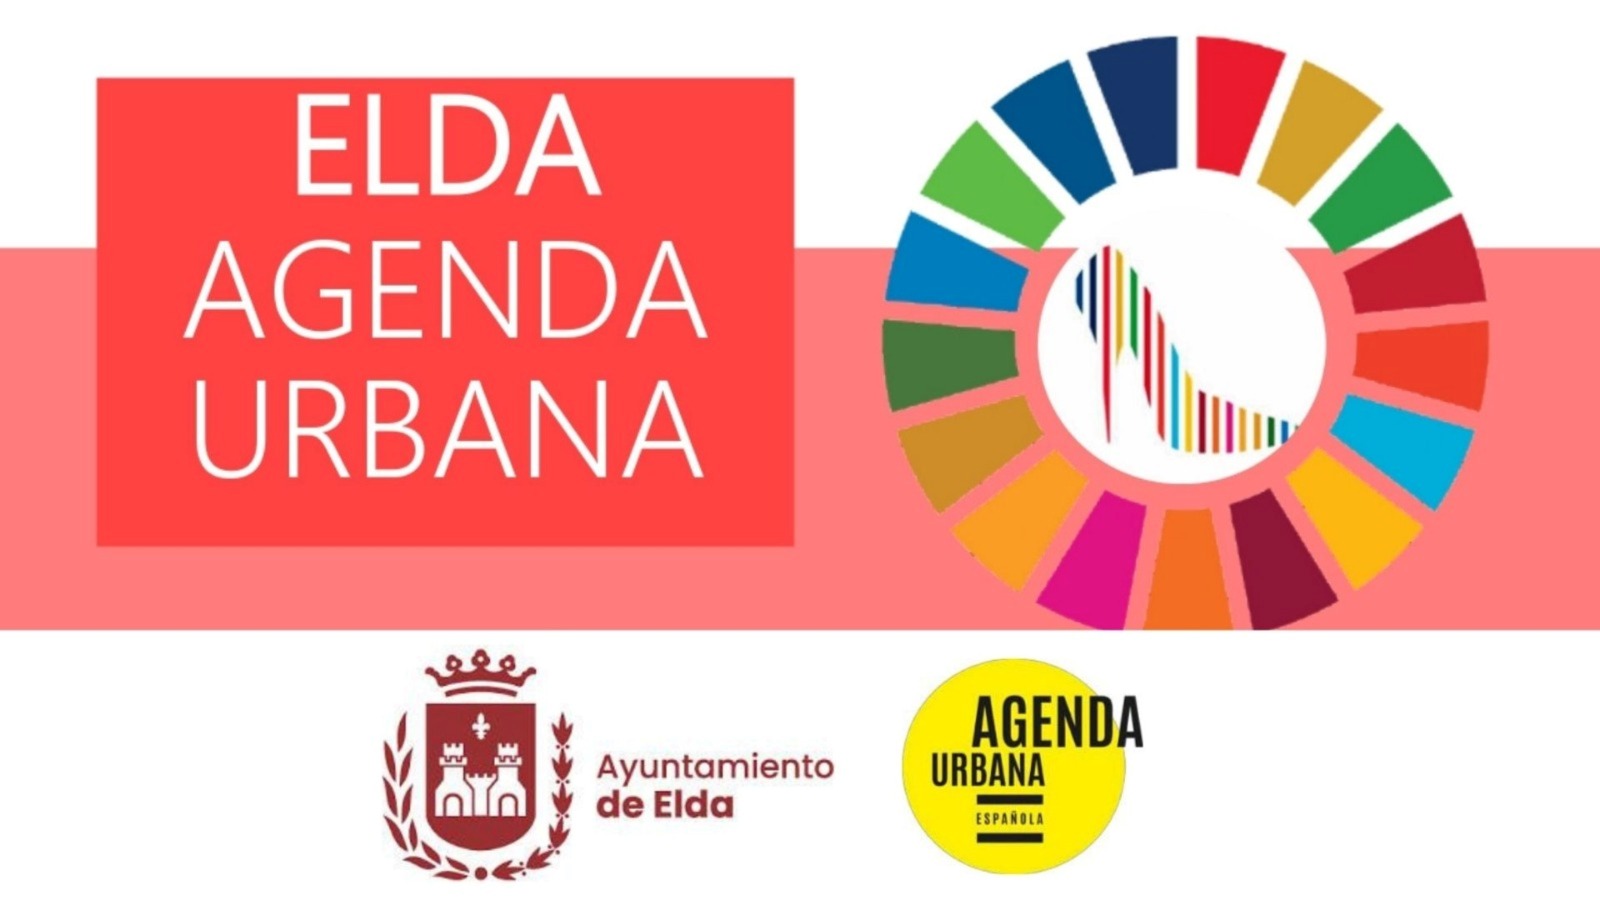 Elda ha sido elegida por el Gobierno de España como una de las ciudades piloto para la elaboración de la Agenda Urbana